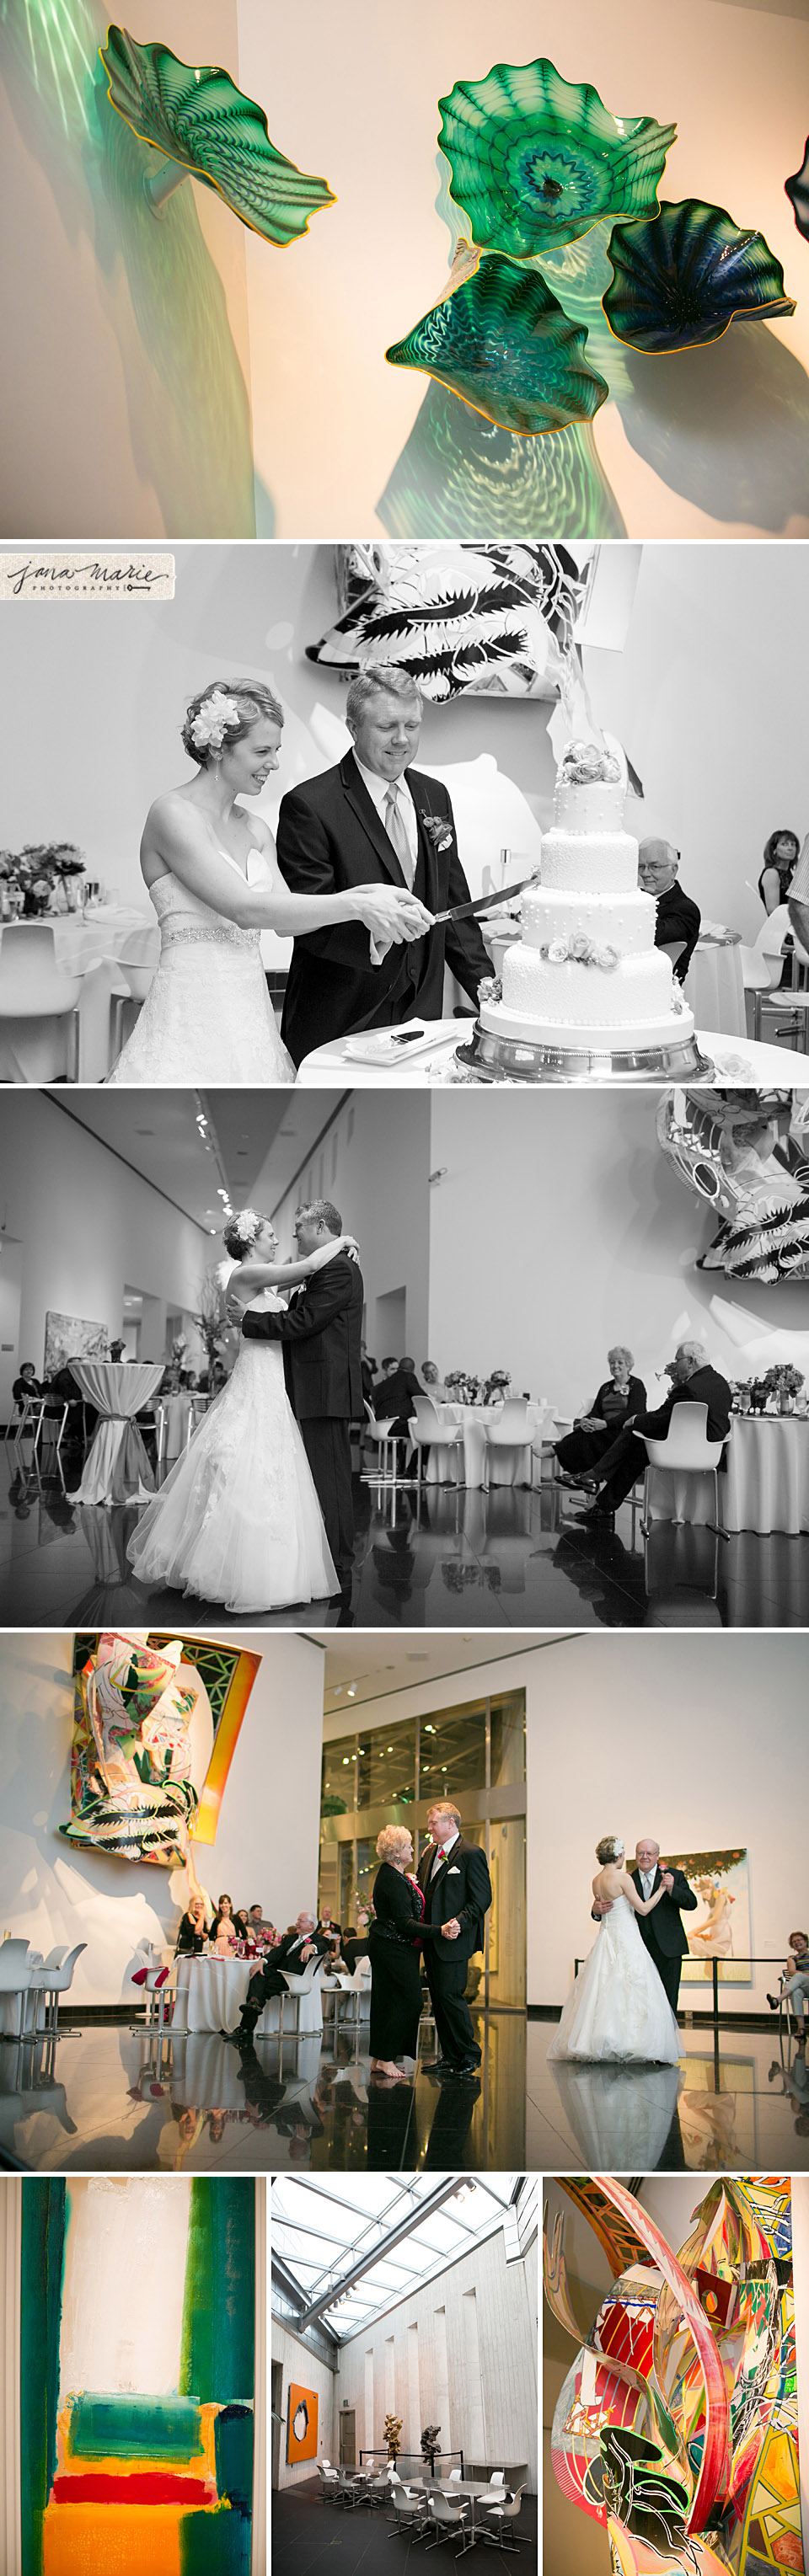 First dance, Cutting the cake, Kansas City brides, KC weddings, reception venues, Modern art museums, sculpture